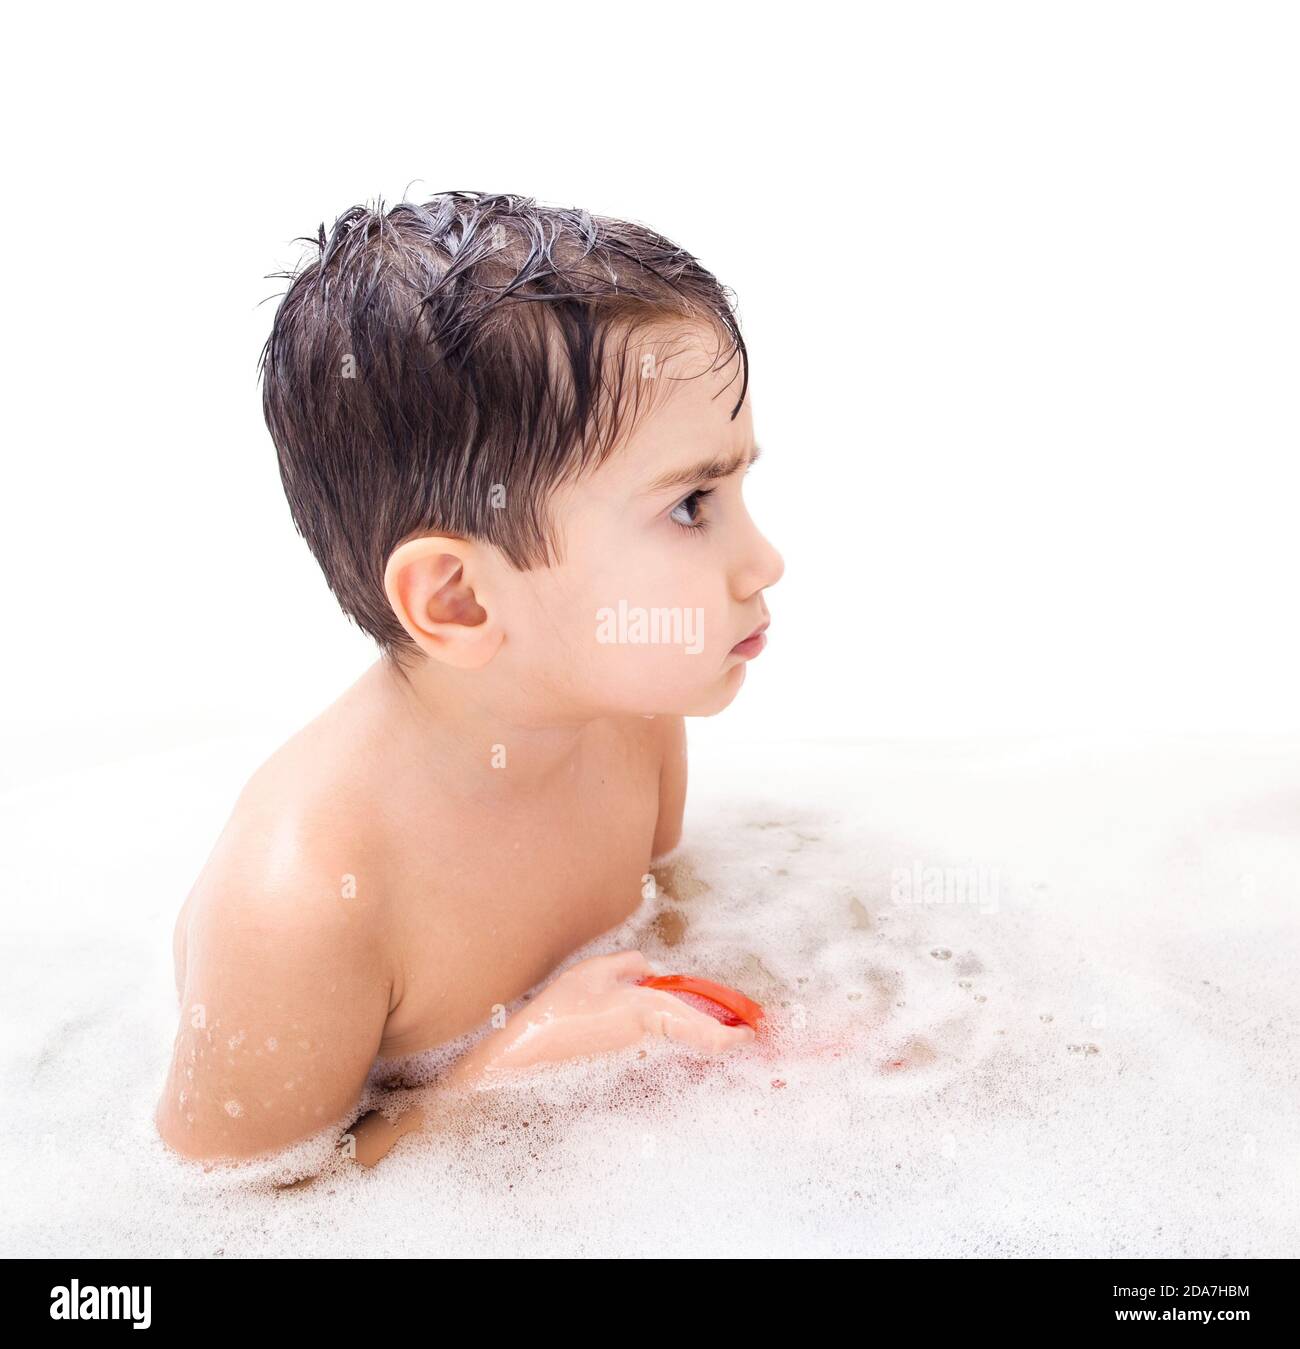 Мальчик в ванной. Мальчик моет ноги. Мытье мальчика в ванной видео. Мальчик 13 моет ноги. Boys washing